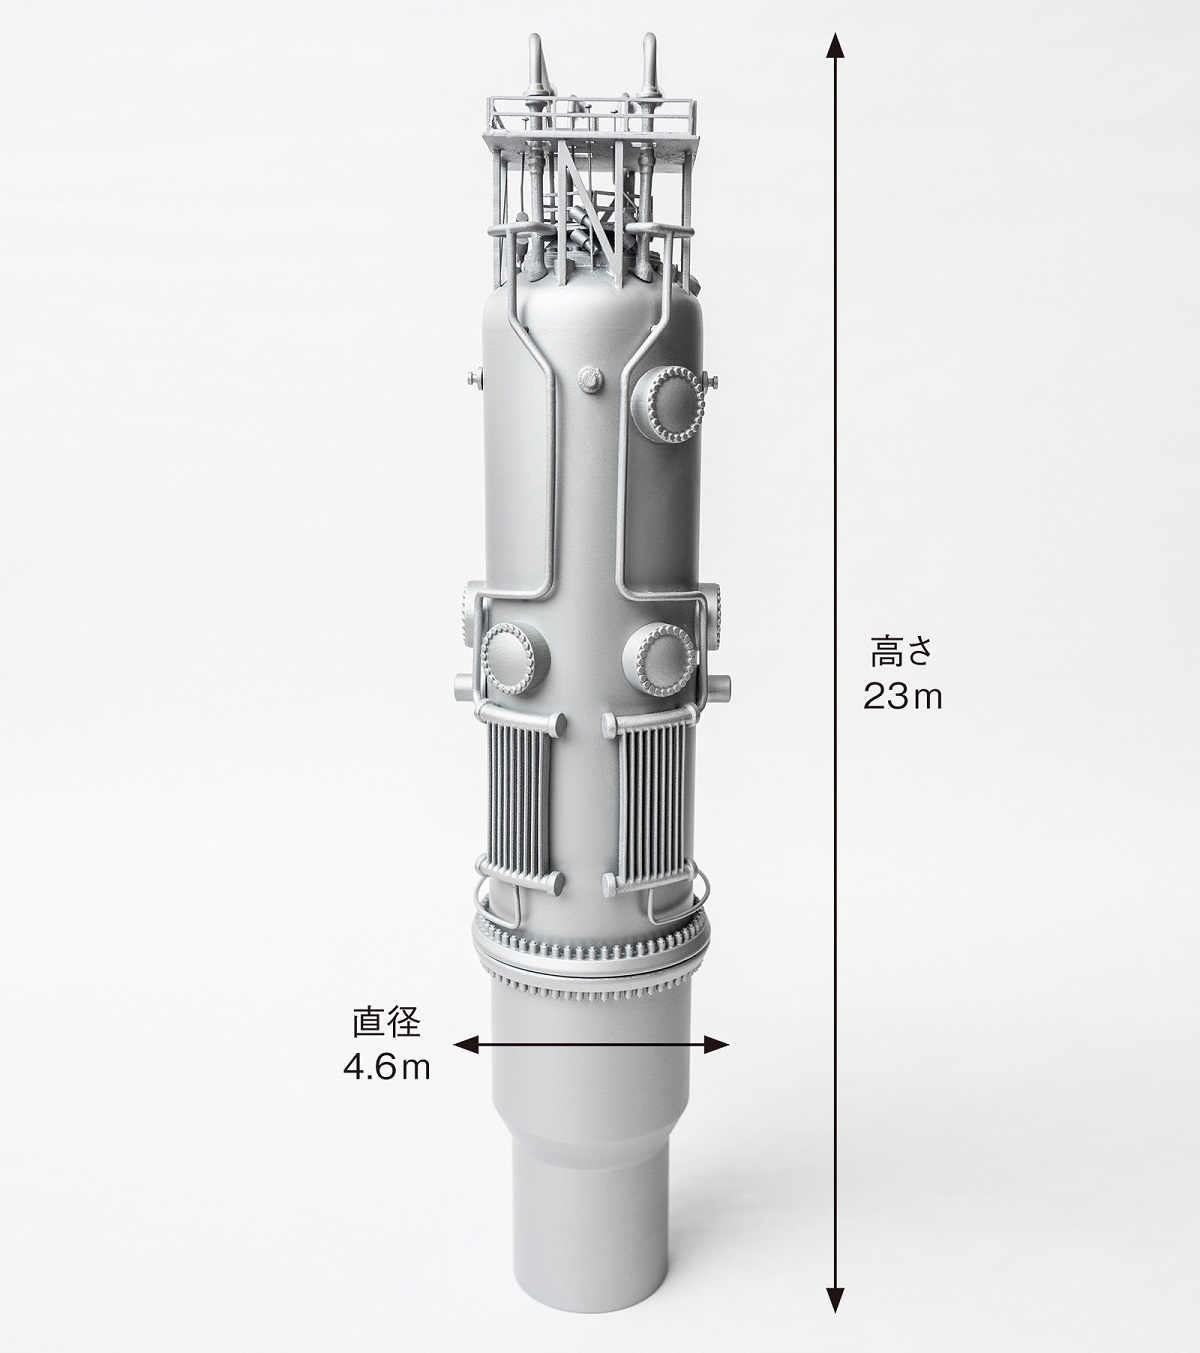 自然循環で冷却 小型でシンプルな米nuscale Powerの原子炉 日経クロステック Xtech